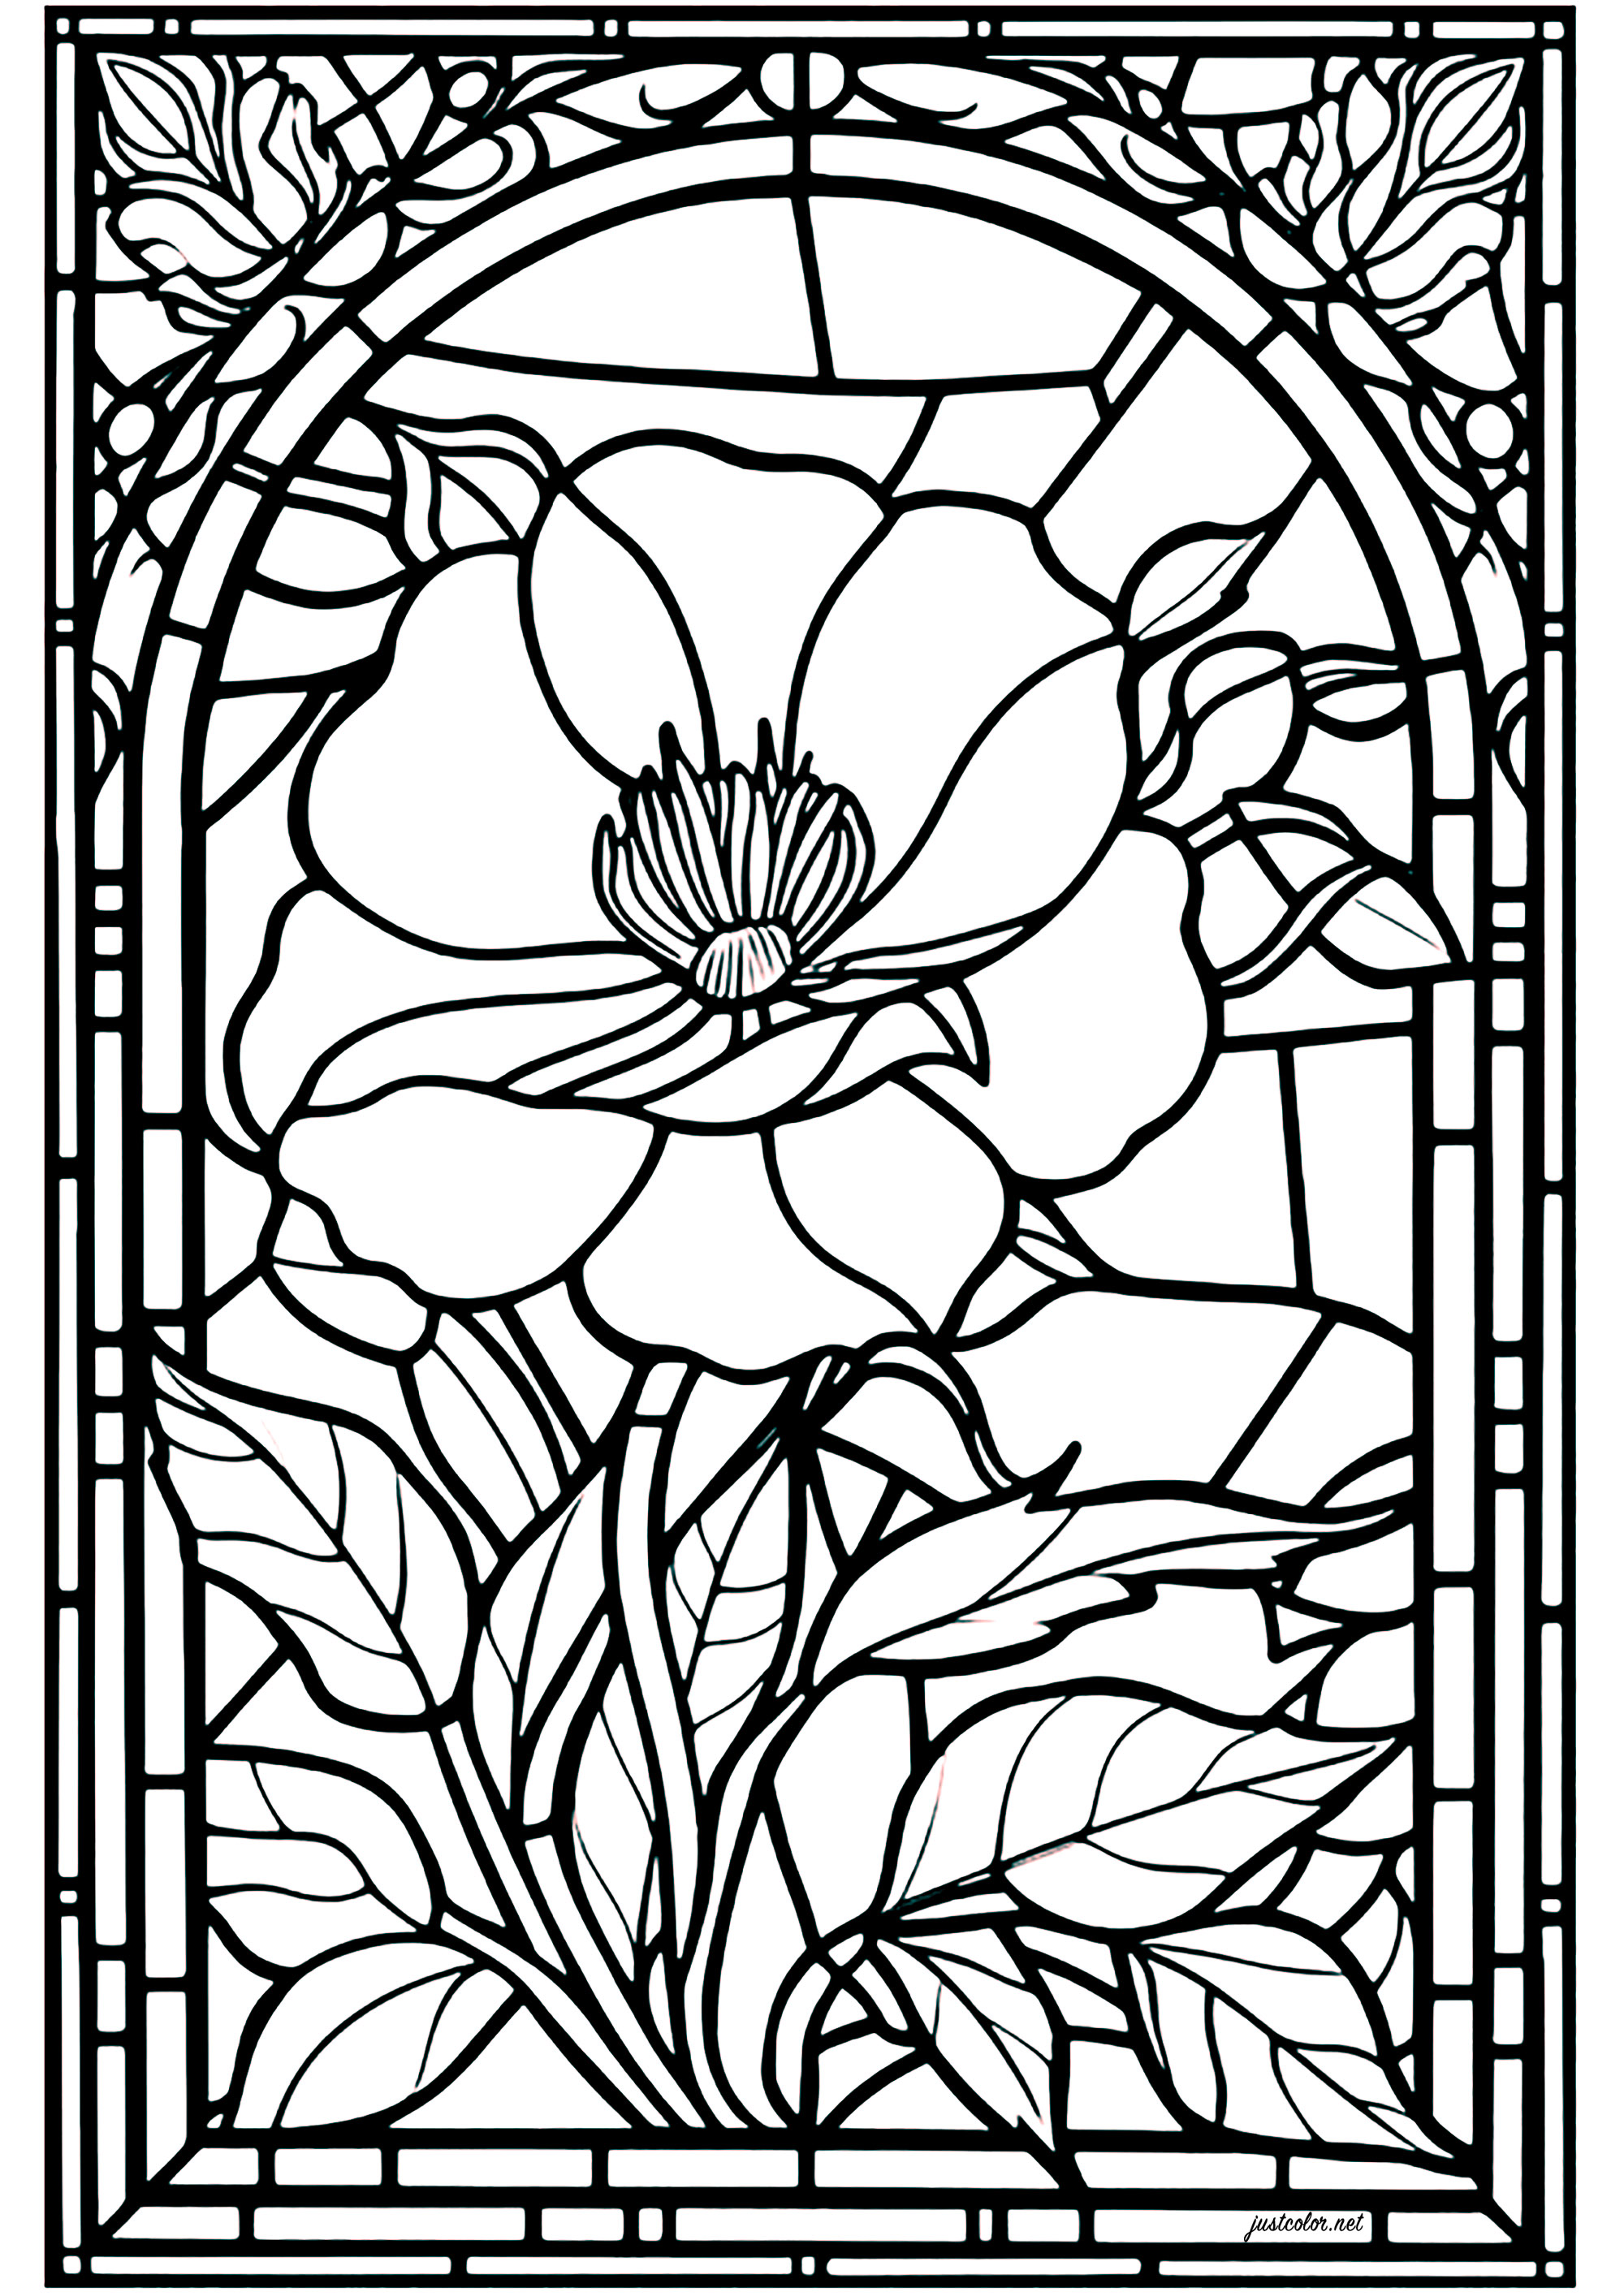 Colorear una vidriera con una bonita flor como tema principal